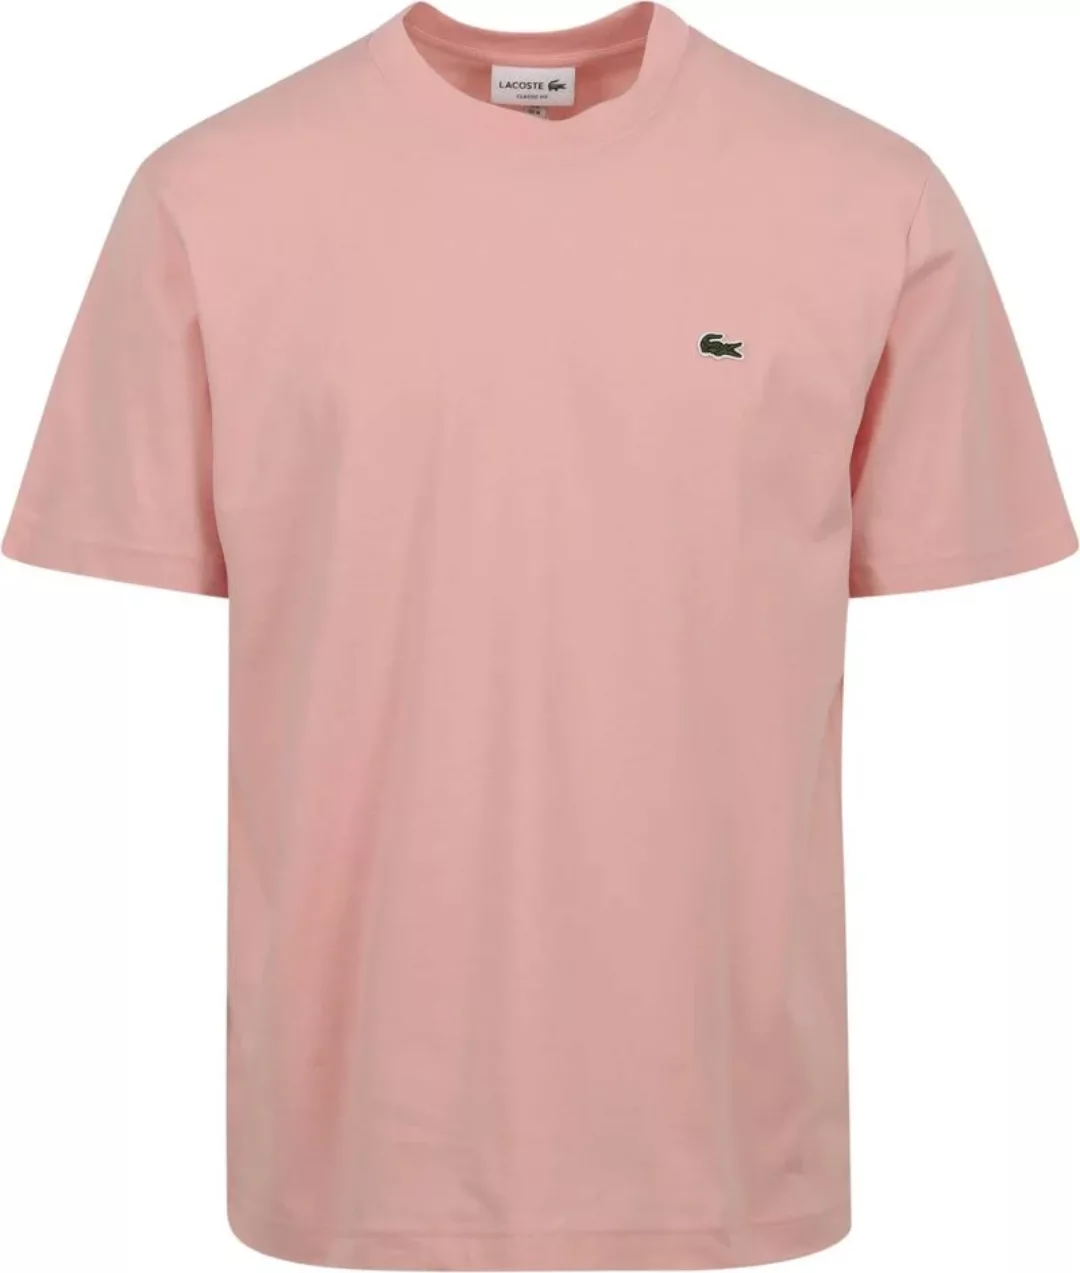 Lacoste T-Shirt Rosa - Größe L günstig online kaufen